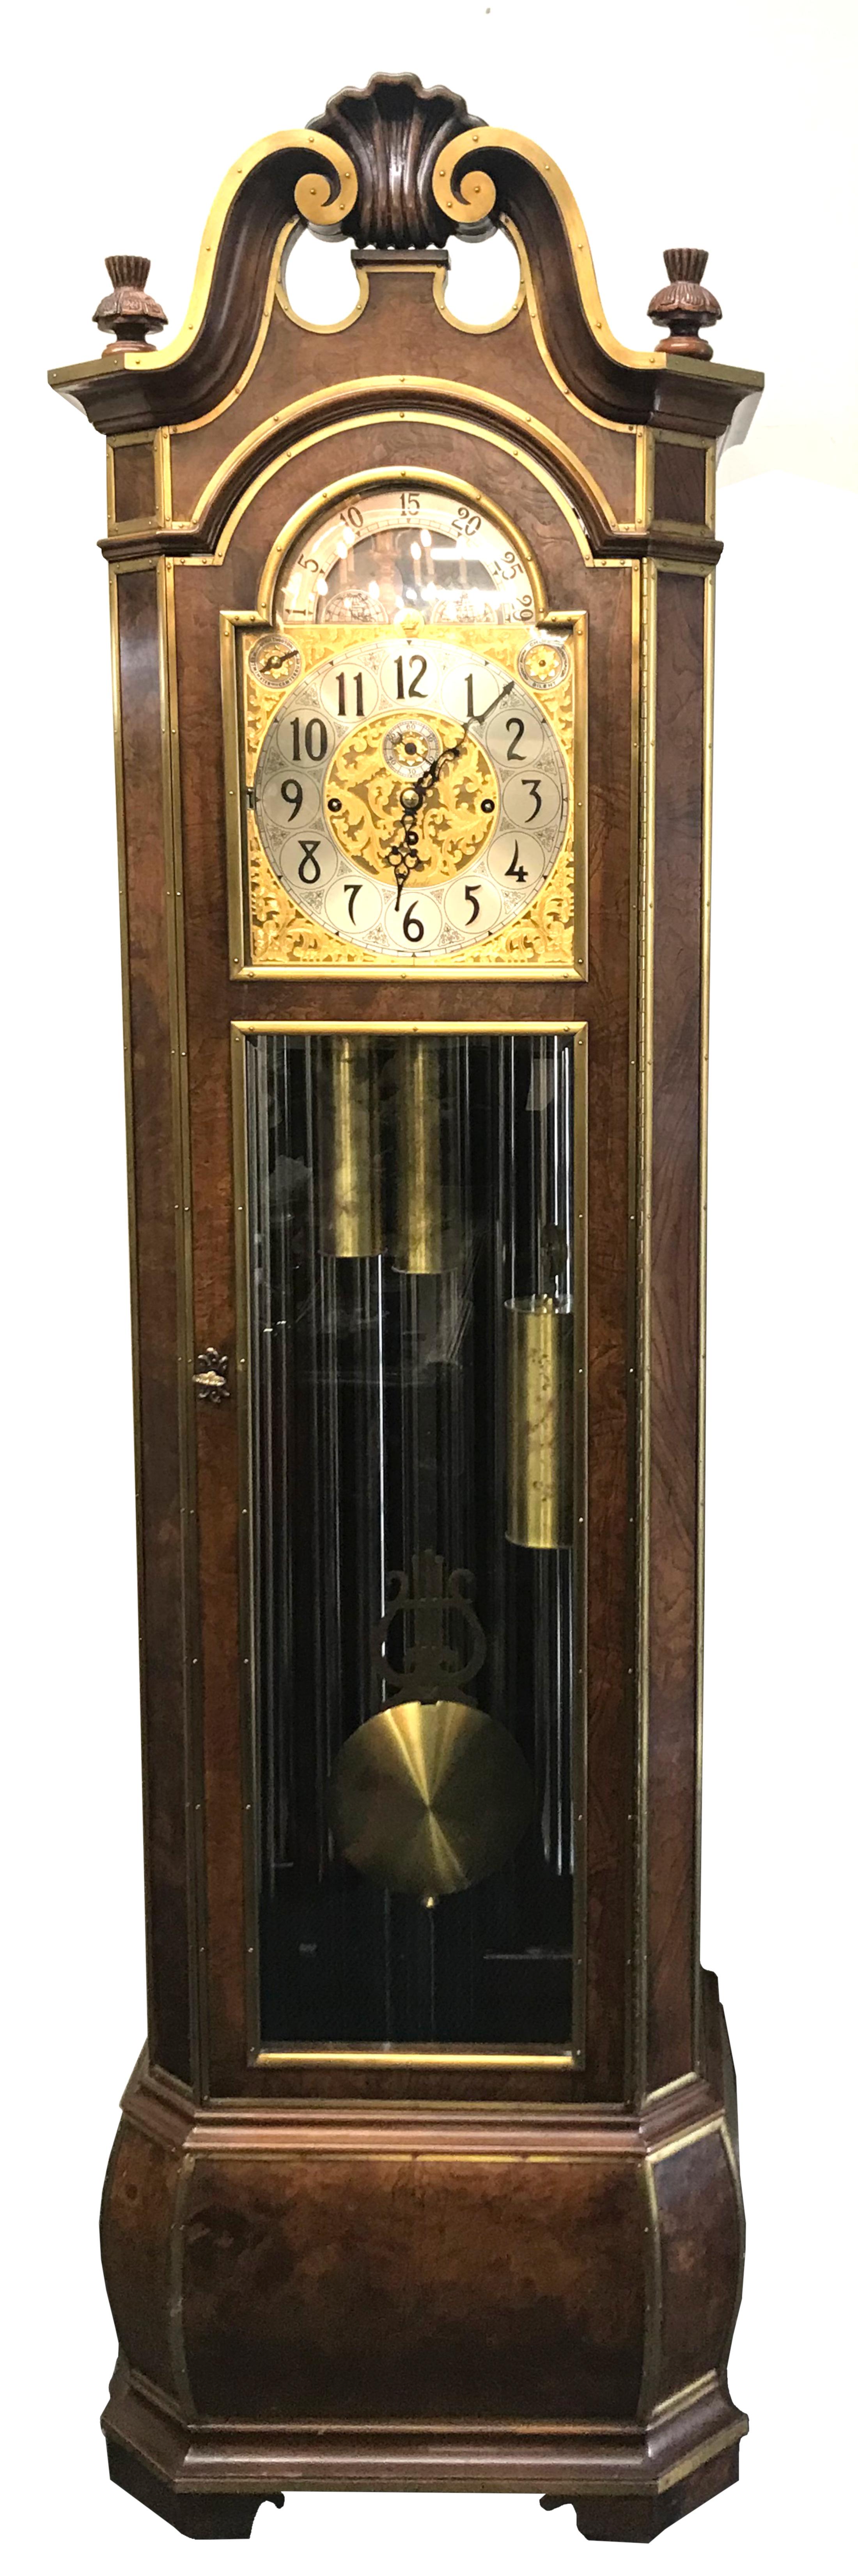 Hohe Herschede-Uhr mit Messingbeschlägen aus Wurzelholz, hohes Gehäuse, 
Modell 250, Uhrwerk und Zifferblatt signiert Herschede. 
Die Flagship-Uhr mit hohem Gehäuse der Herschede Hall Clock Company war auch eine der letzten Uhren, die von